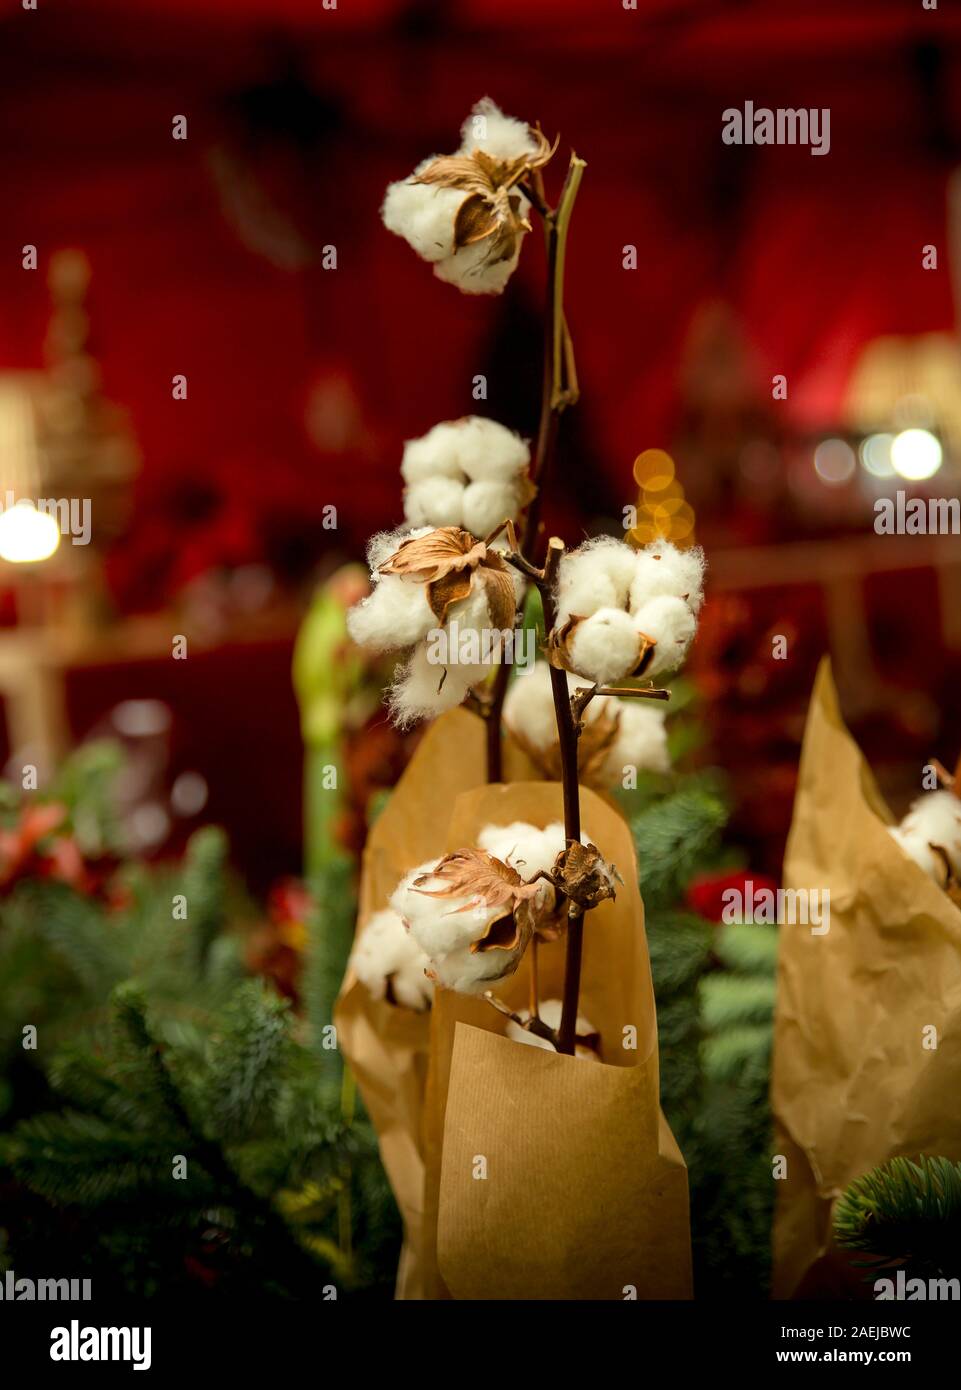 Accueil chaleureux et fond rouge avec close-up d'emballage de cadeaux fleurs de coton Banque D'Images